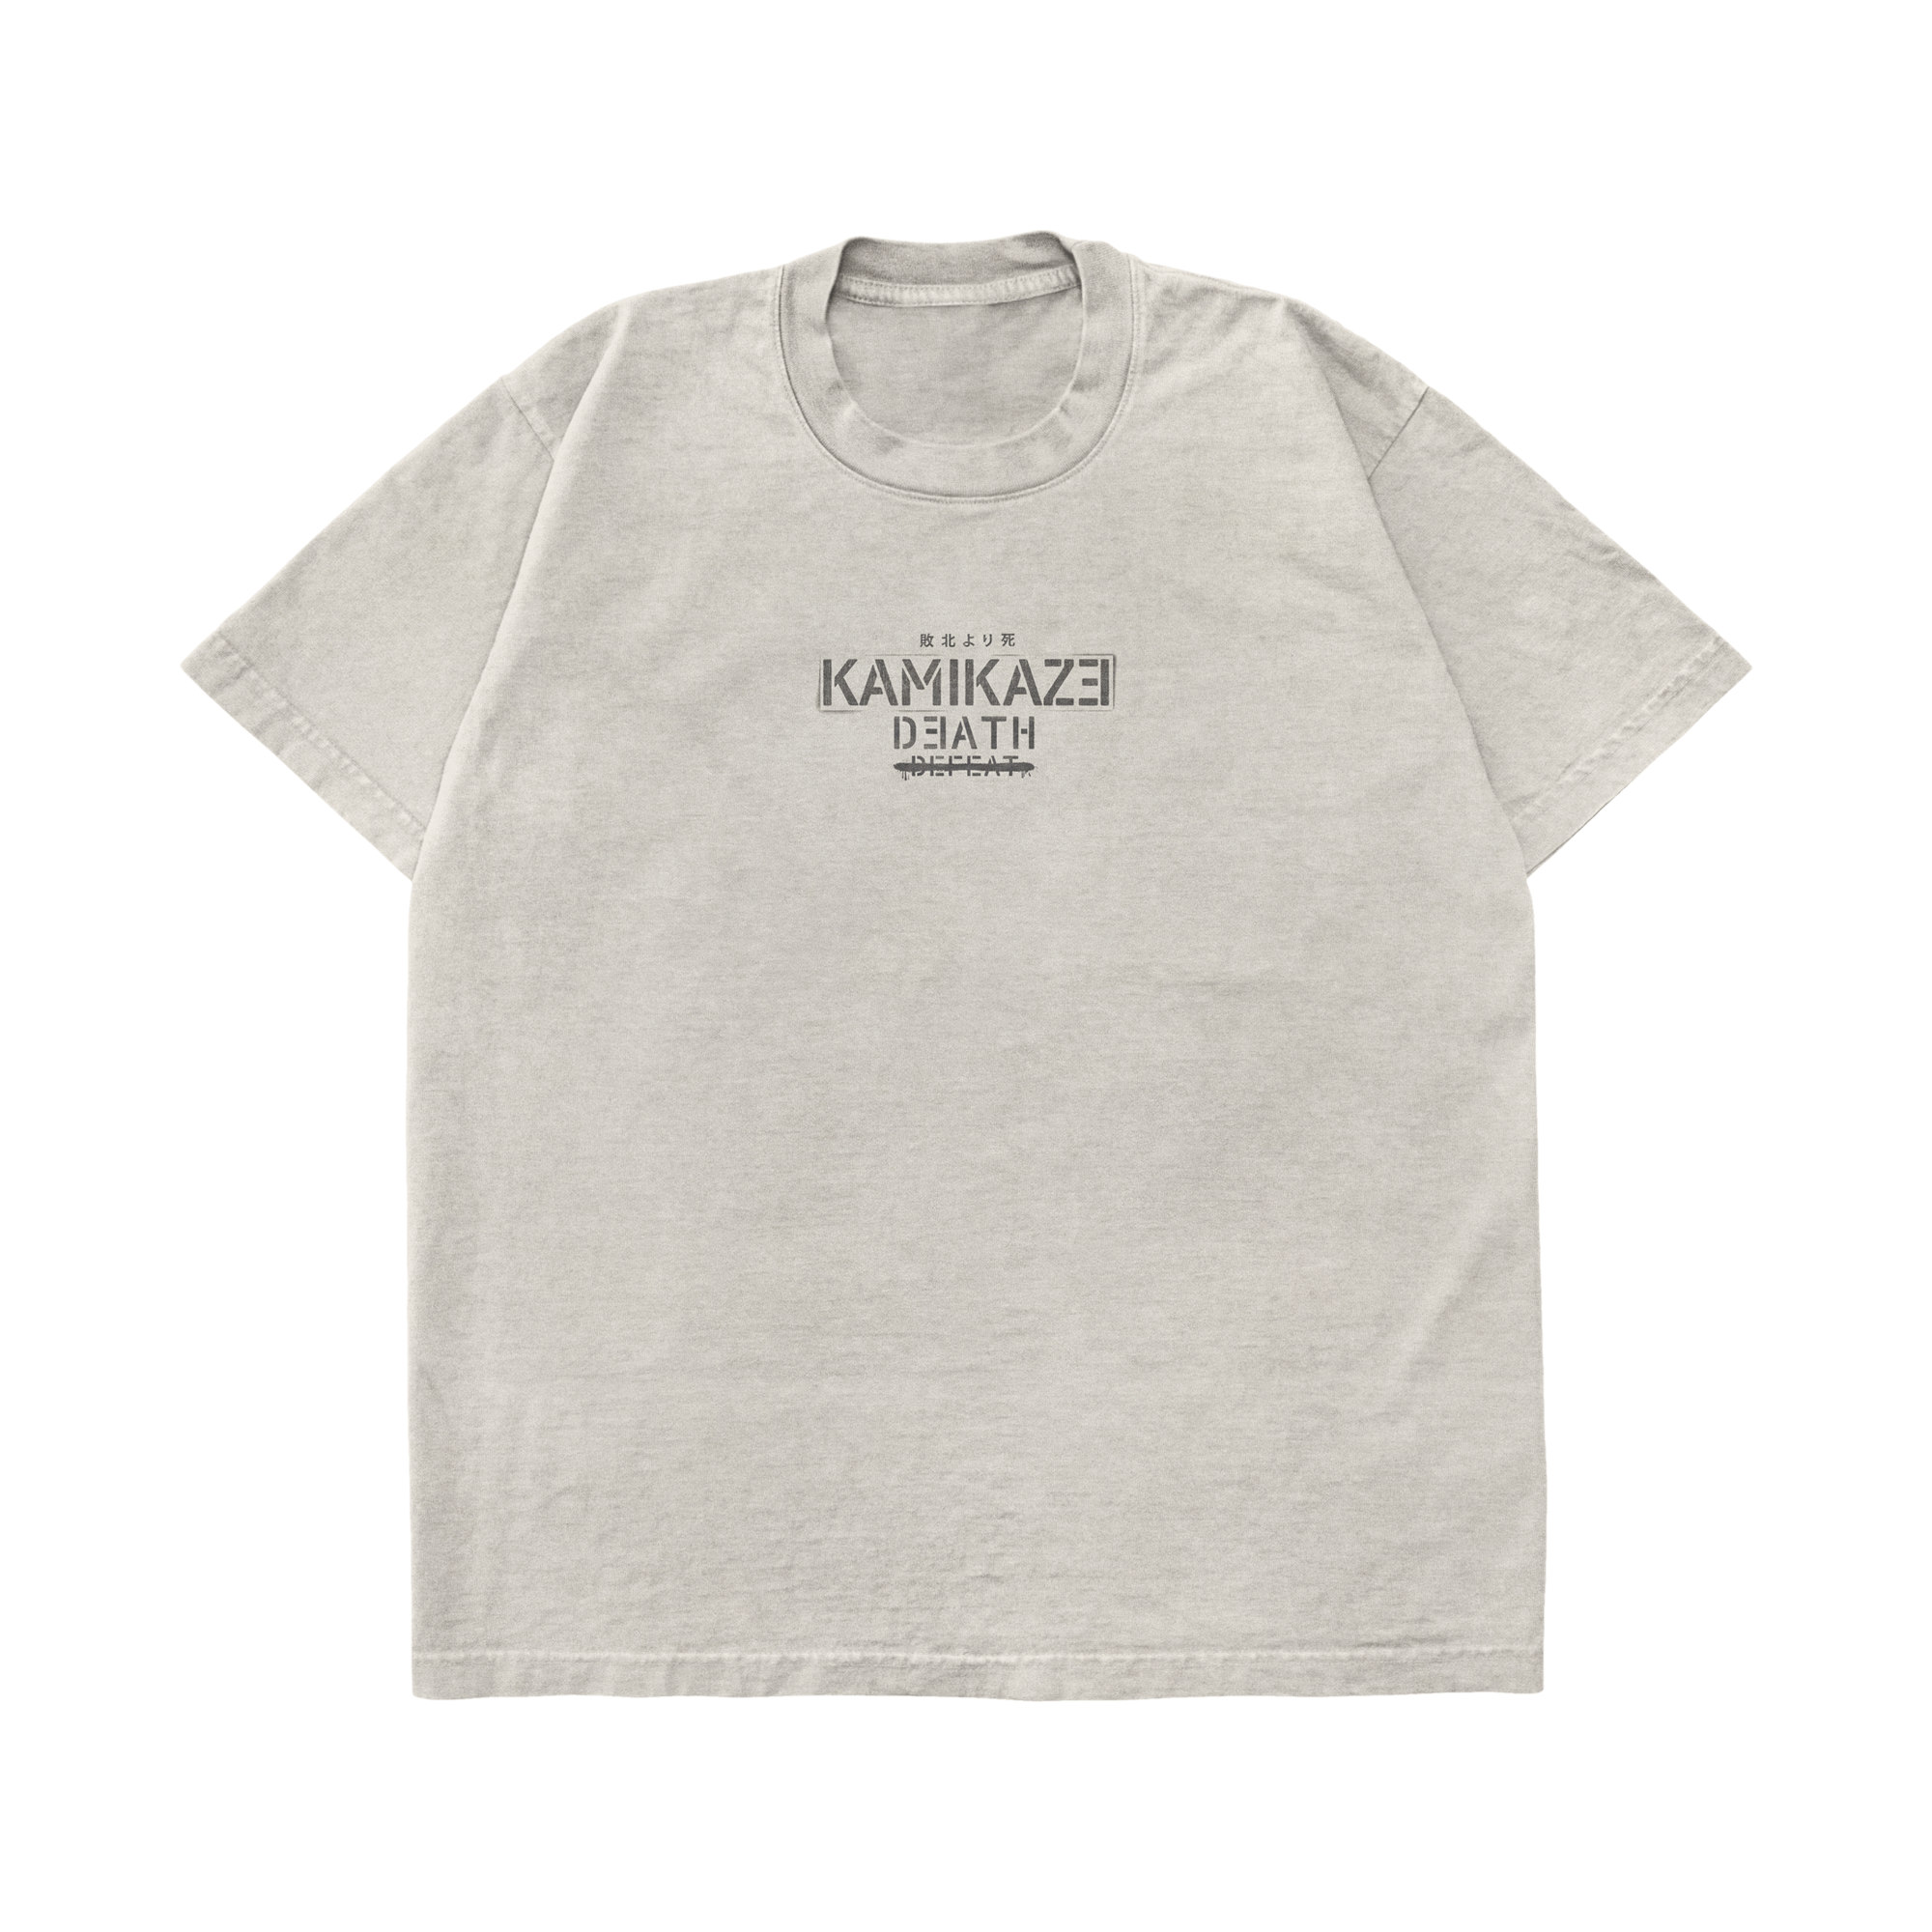 Kamikaze Propoganda T-Shirt Front